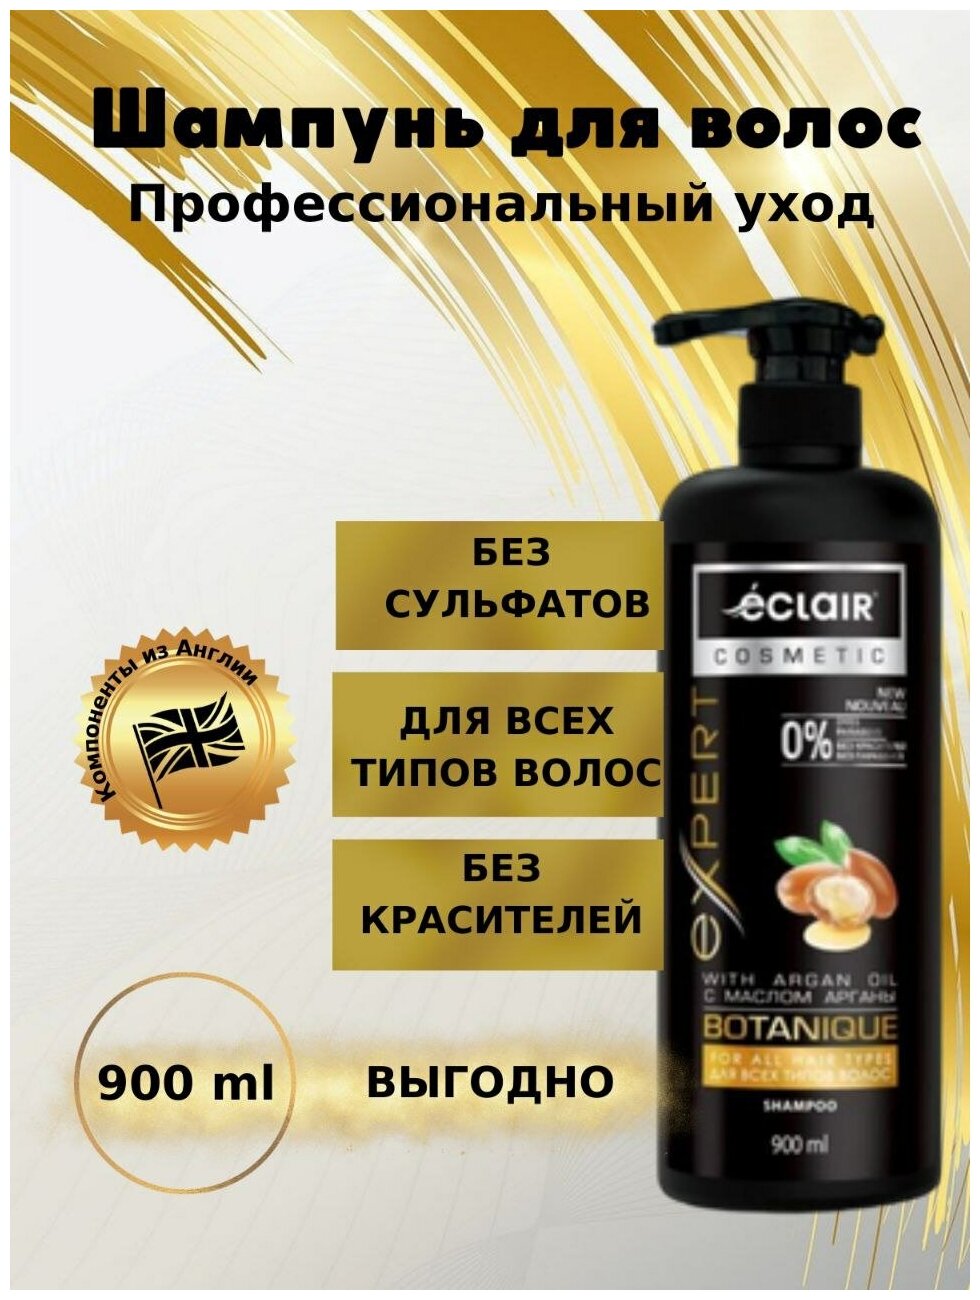 Шампунь для волос "Expert" с маслом арганы, 900 мл